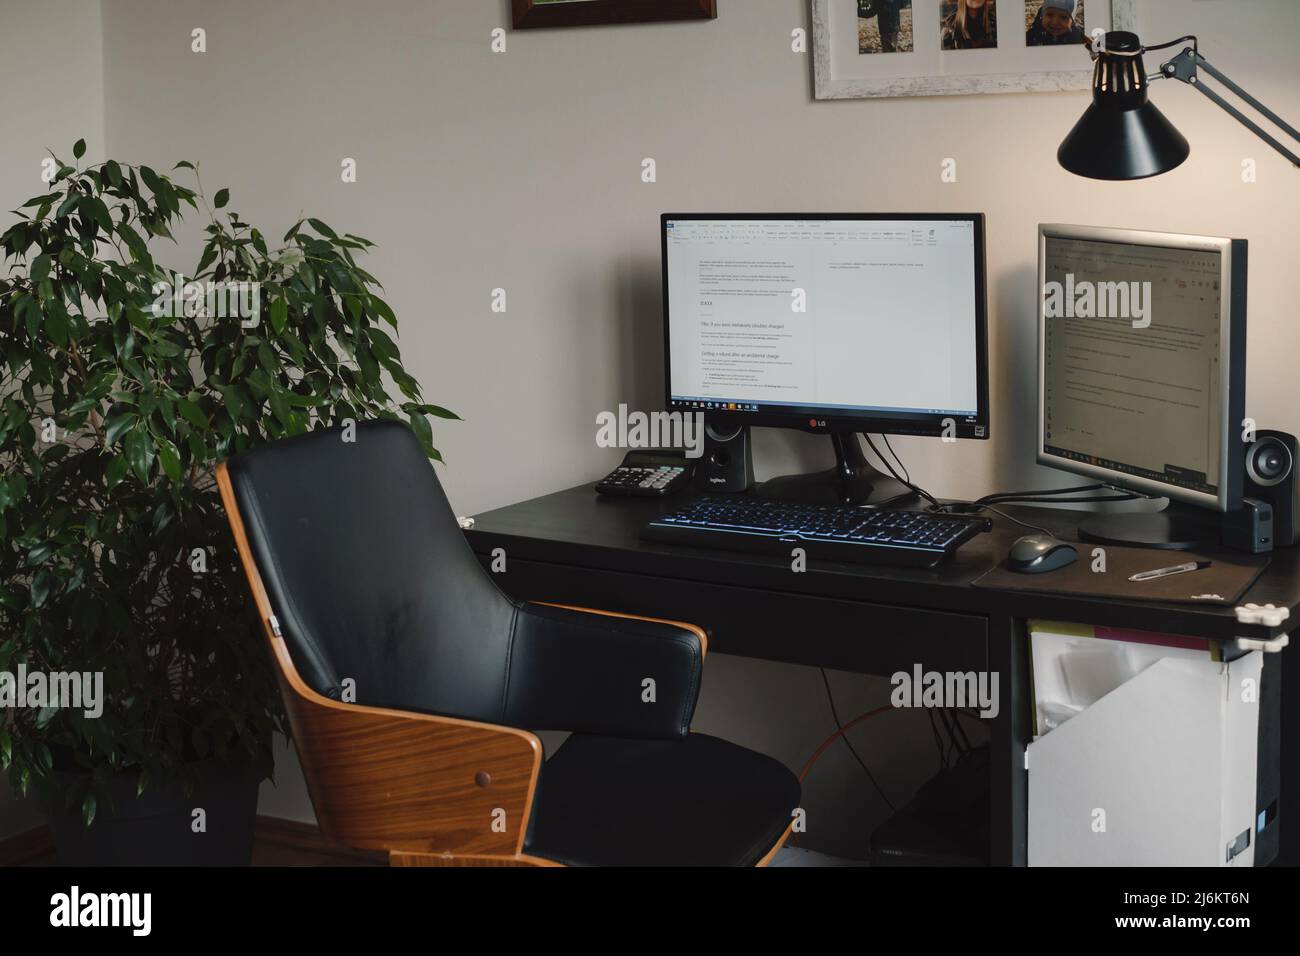 Freiberuflicher Arbeitsplatz, Heimarbeitsplatz mit Computer und Bildschirm. Komfortabler Schreibtisch ohne Personen mit Heimplanze und Lampe. Boho Vintage Stuhl von The Stockfoto